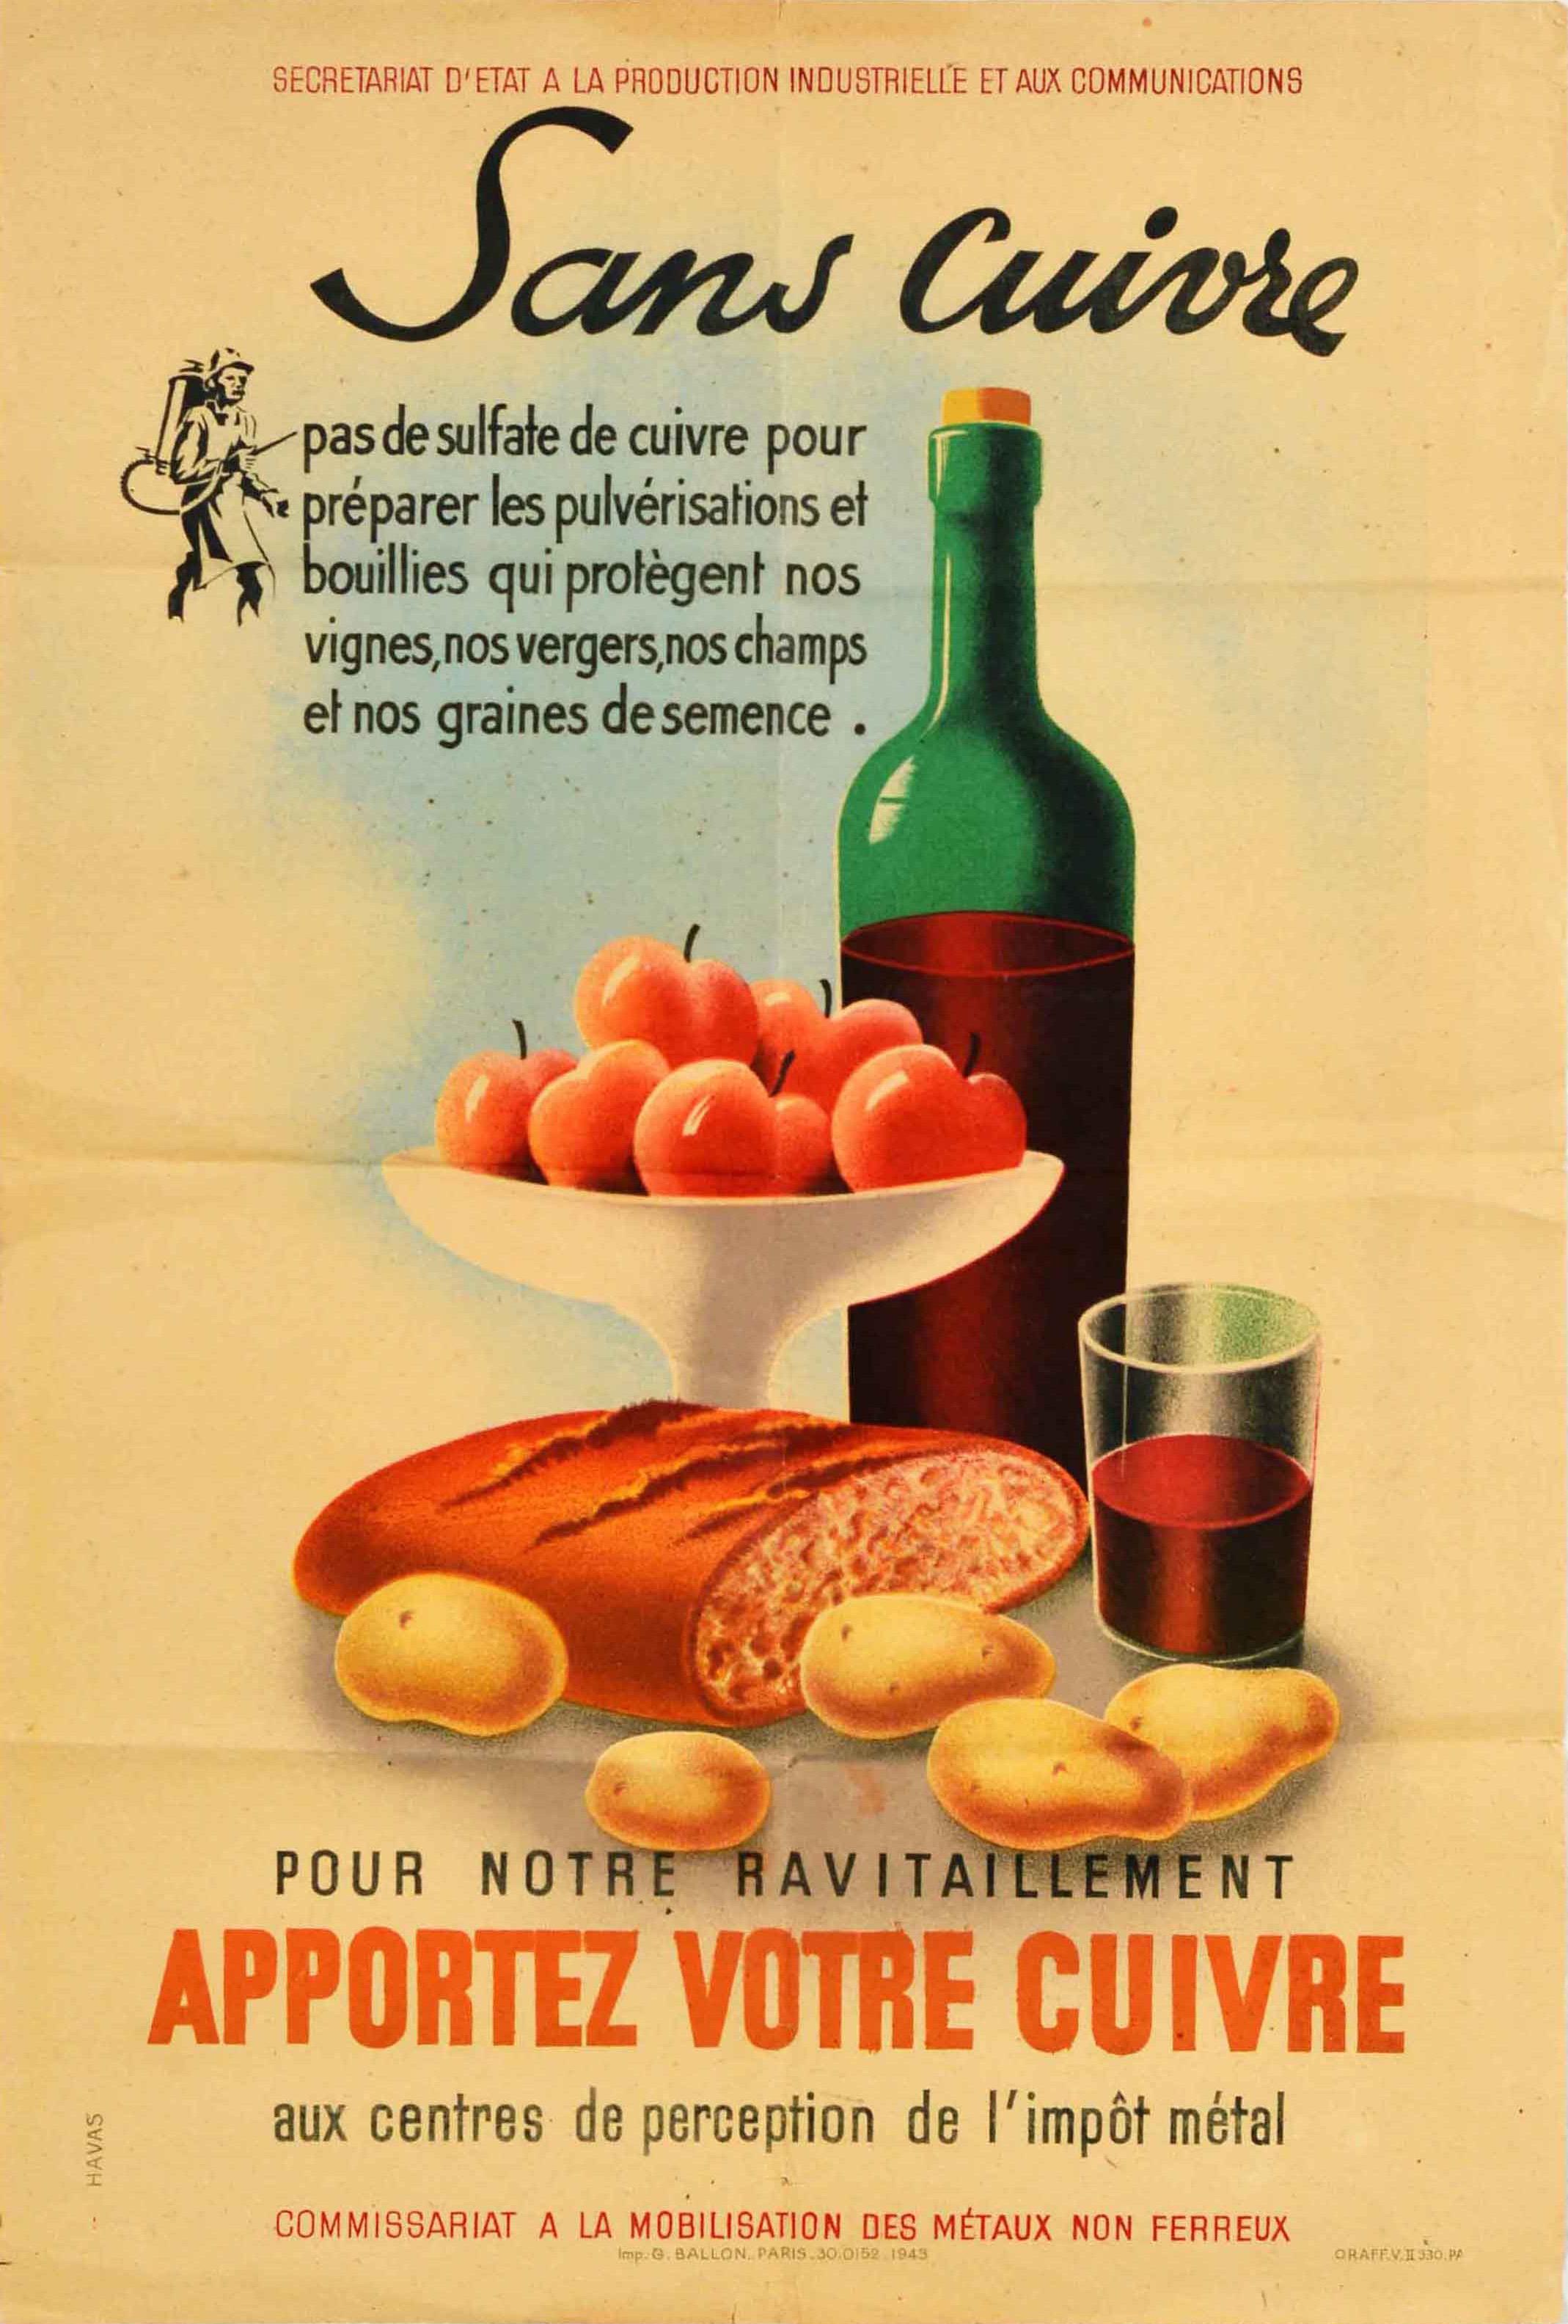 Unknown Print – Original-Vintage-Poster, Kupfer, Metall, Steuersammlung, Lebensmittel, Wein, Landwirtschaft